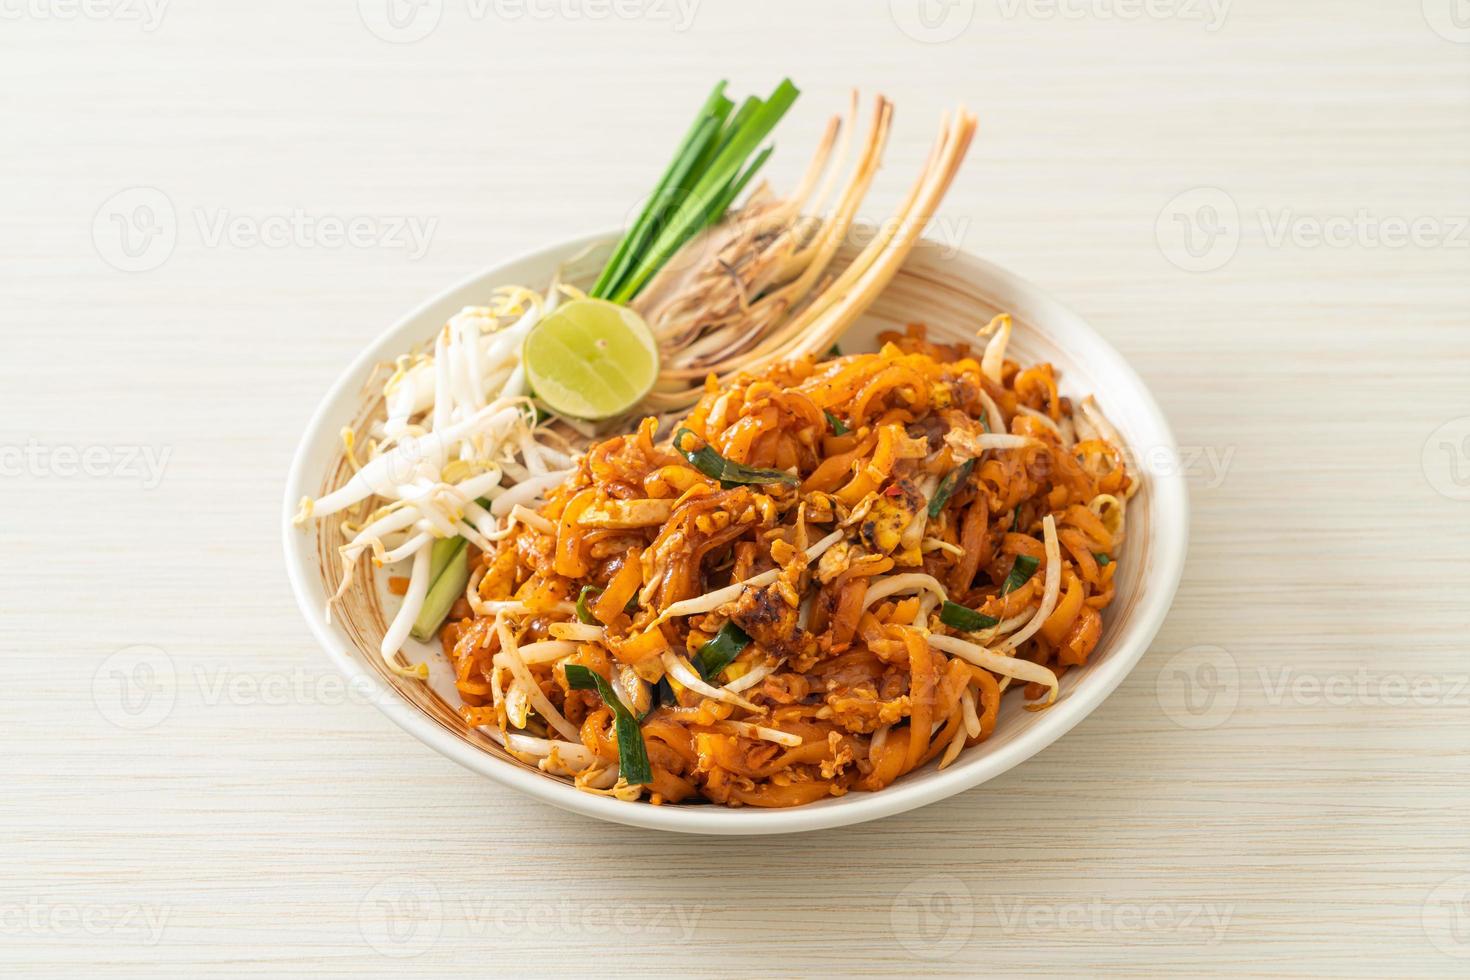 noodle saltati in padella con tofu e germogli o pad thai - stile asiatico foto